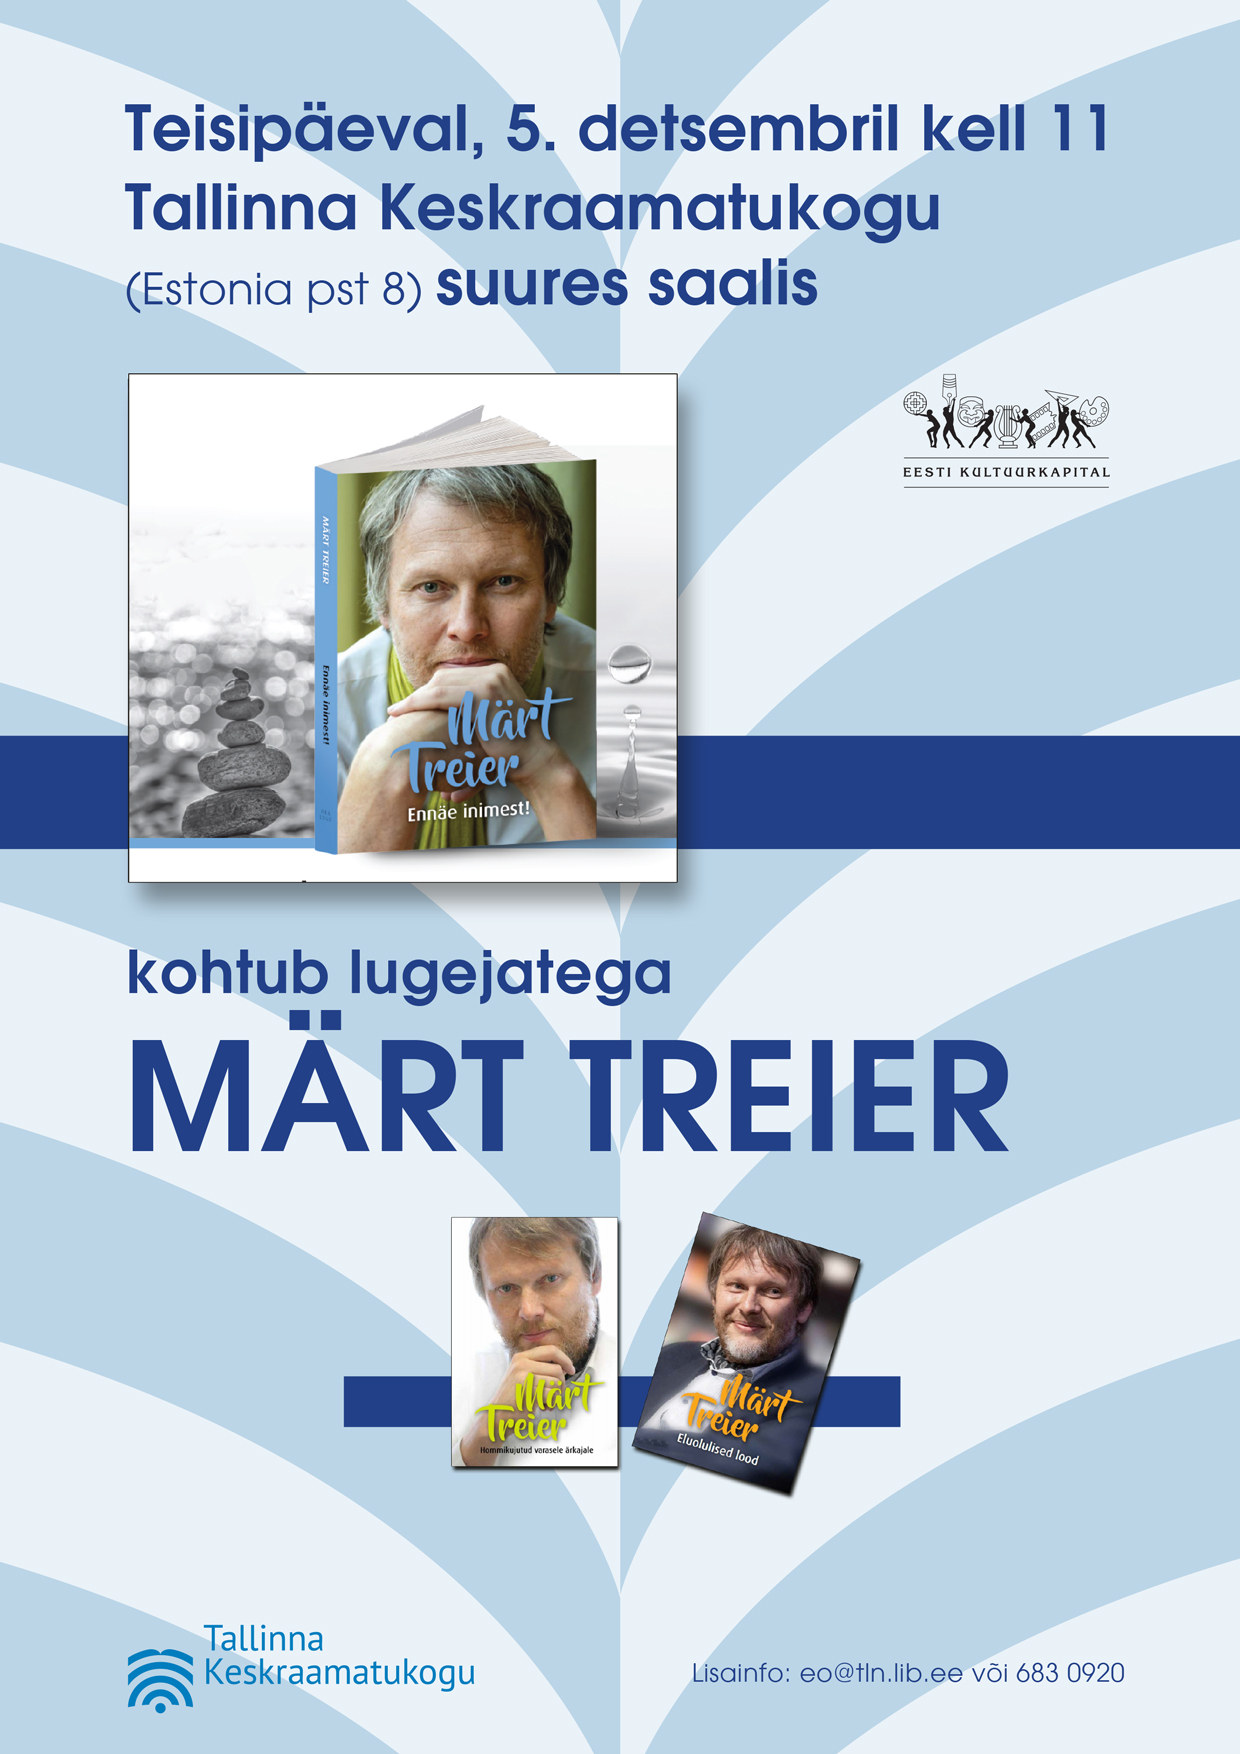 Kirjanik raamatukogus: Märt Treier tutvustab oma uut raamatut